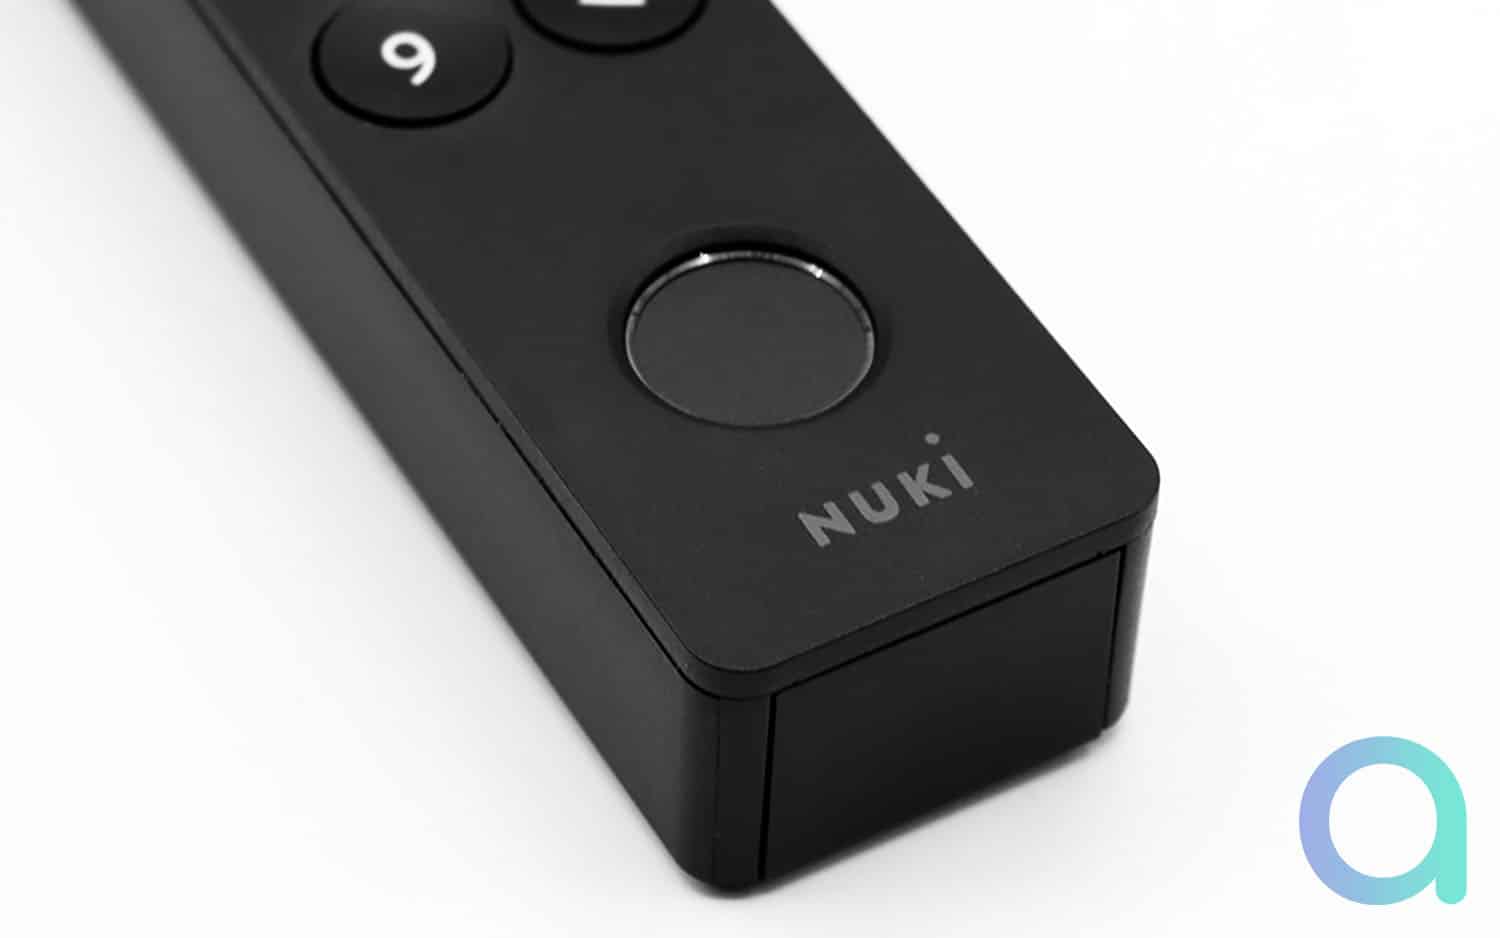 Nuki Keypad 2 : L'ouverture simplifiée de la serrure par empreinte